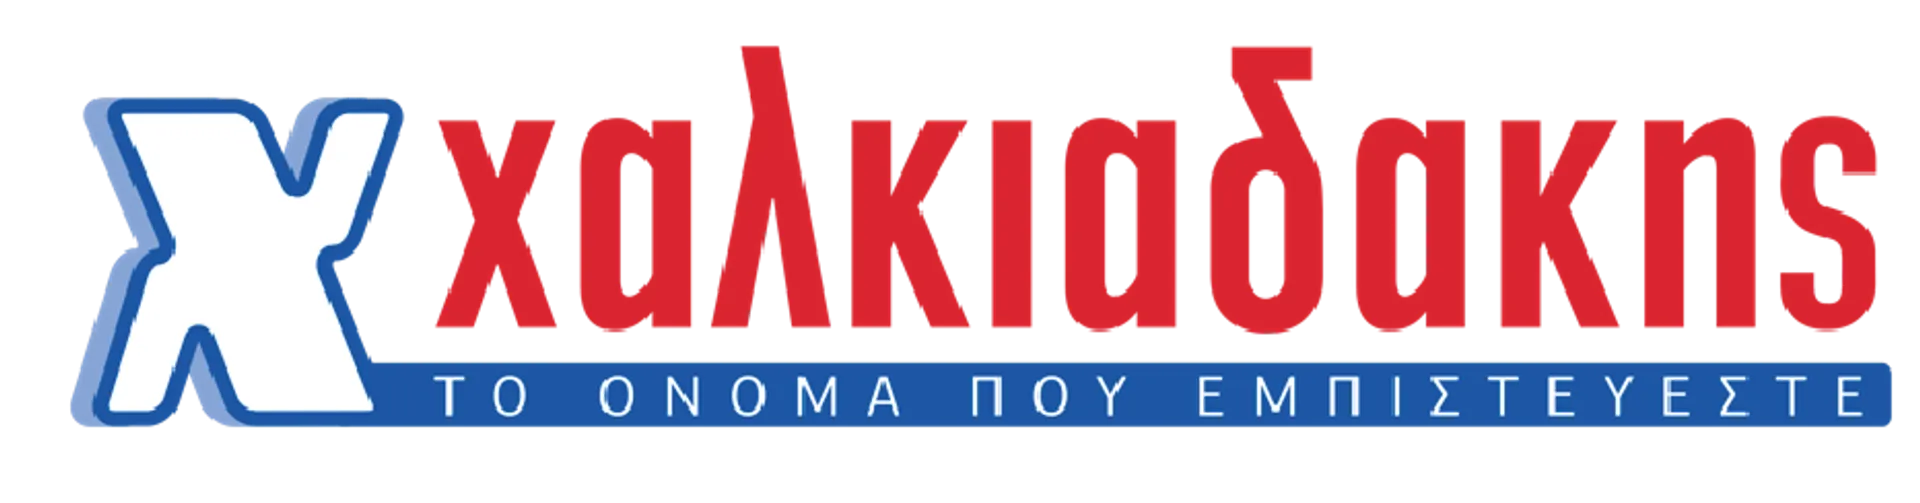 Χαλκιαδάκης logo